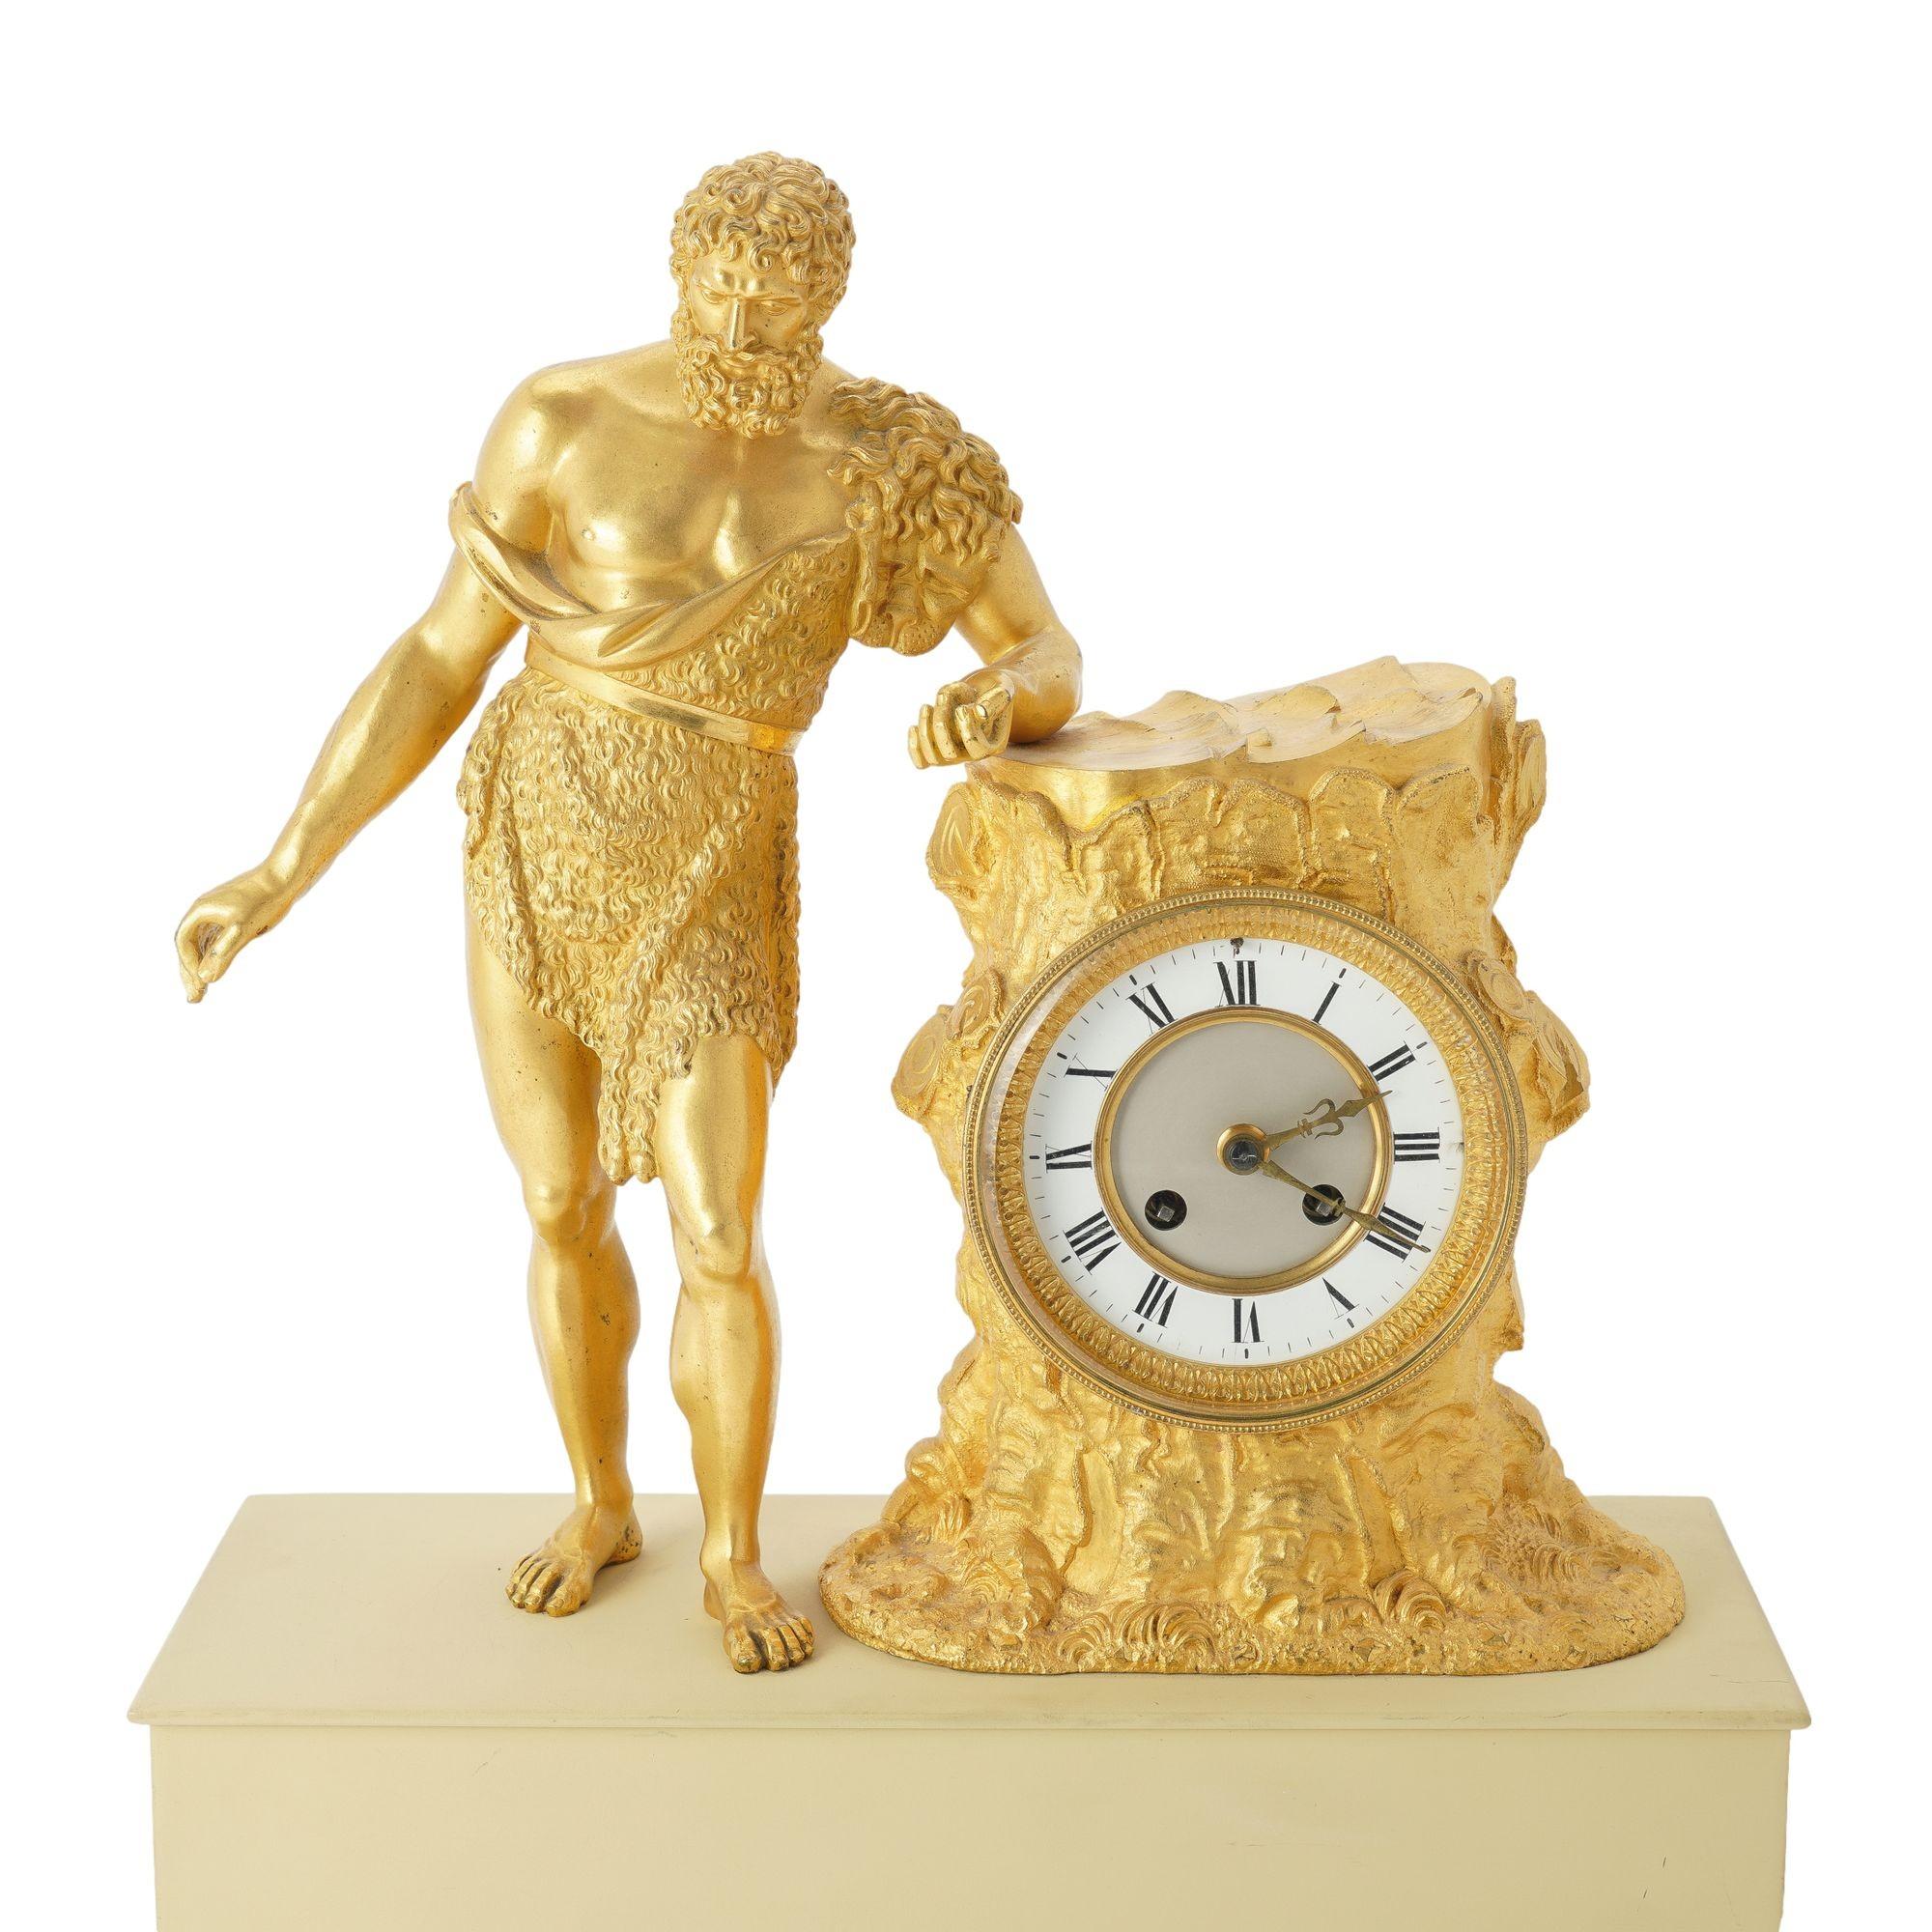 Kaminuhr aus feuervergoldeter Bronze aus der Zeit Karls X. mit einer klassischen Paris-Figur, die einen Apfel hält und sich an einen Baumstumpf lehnt. Der Stumpf ist mit einer Uhr im Pariser Stil mit zwei Zügen und Stundenschlagwerk mit